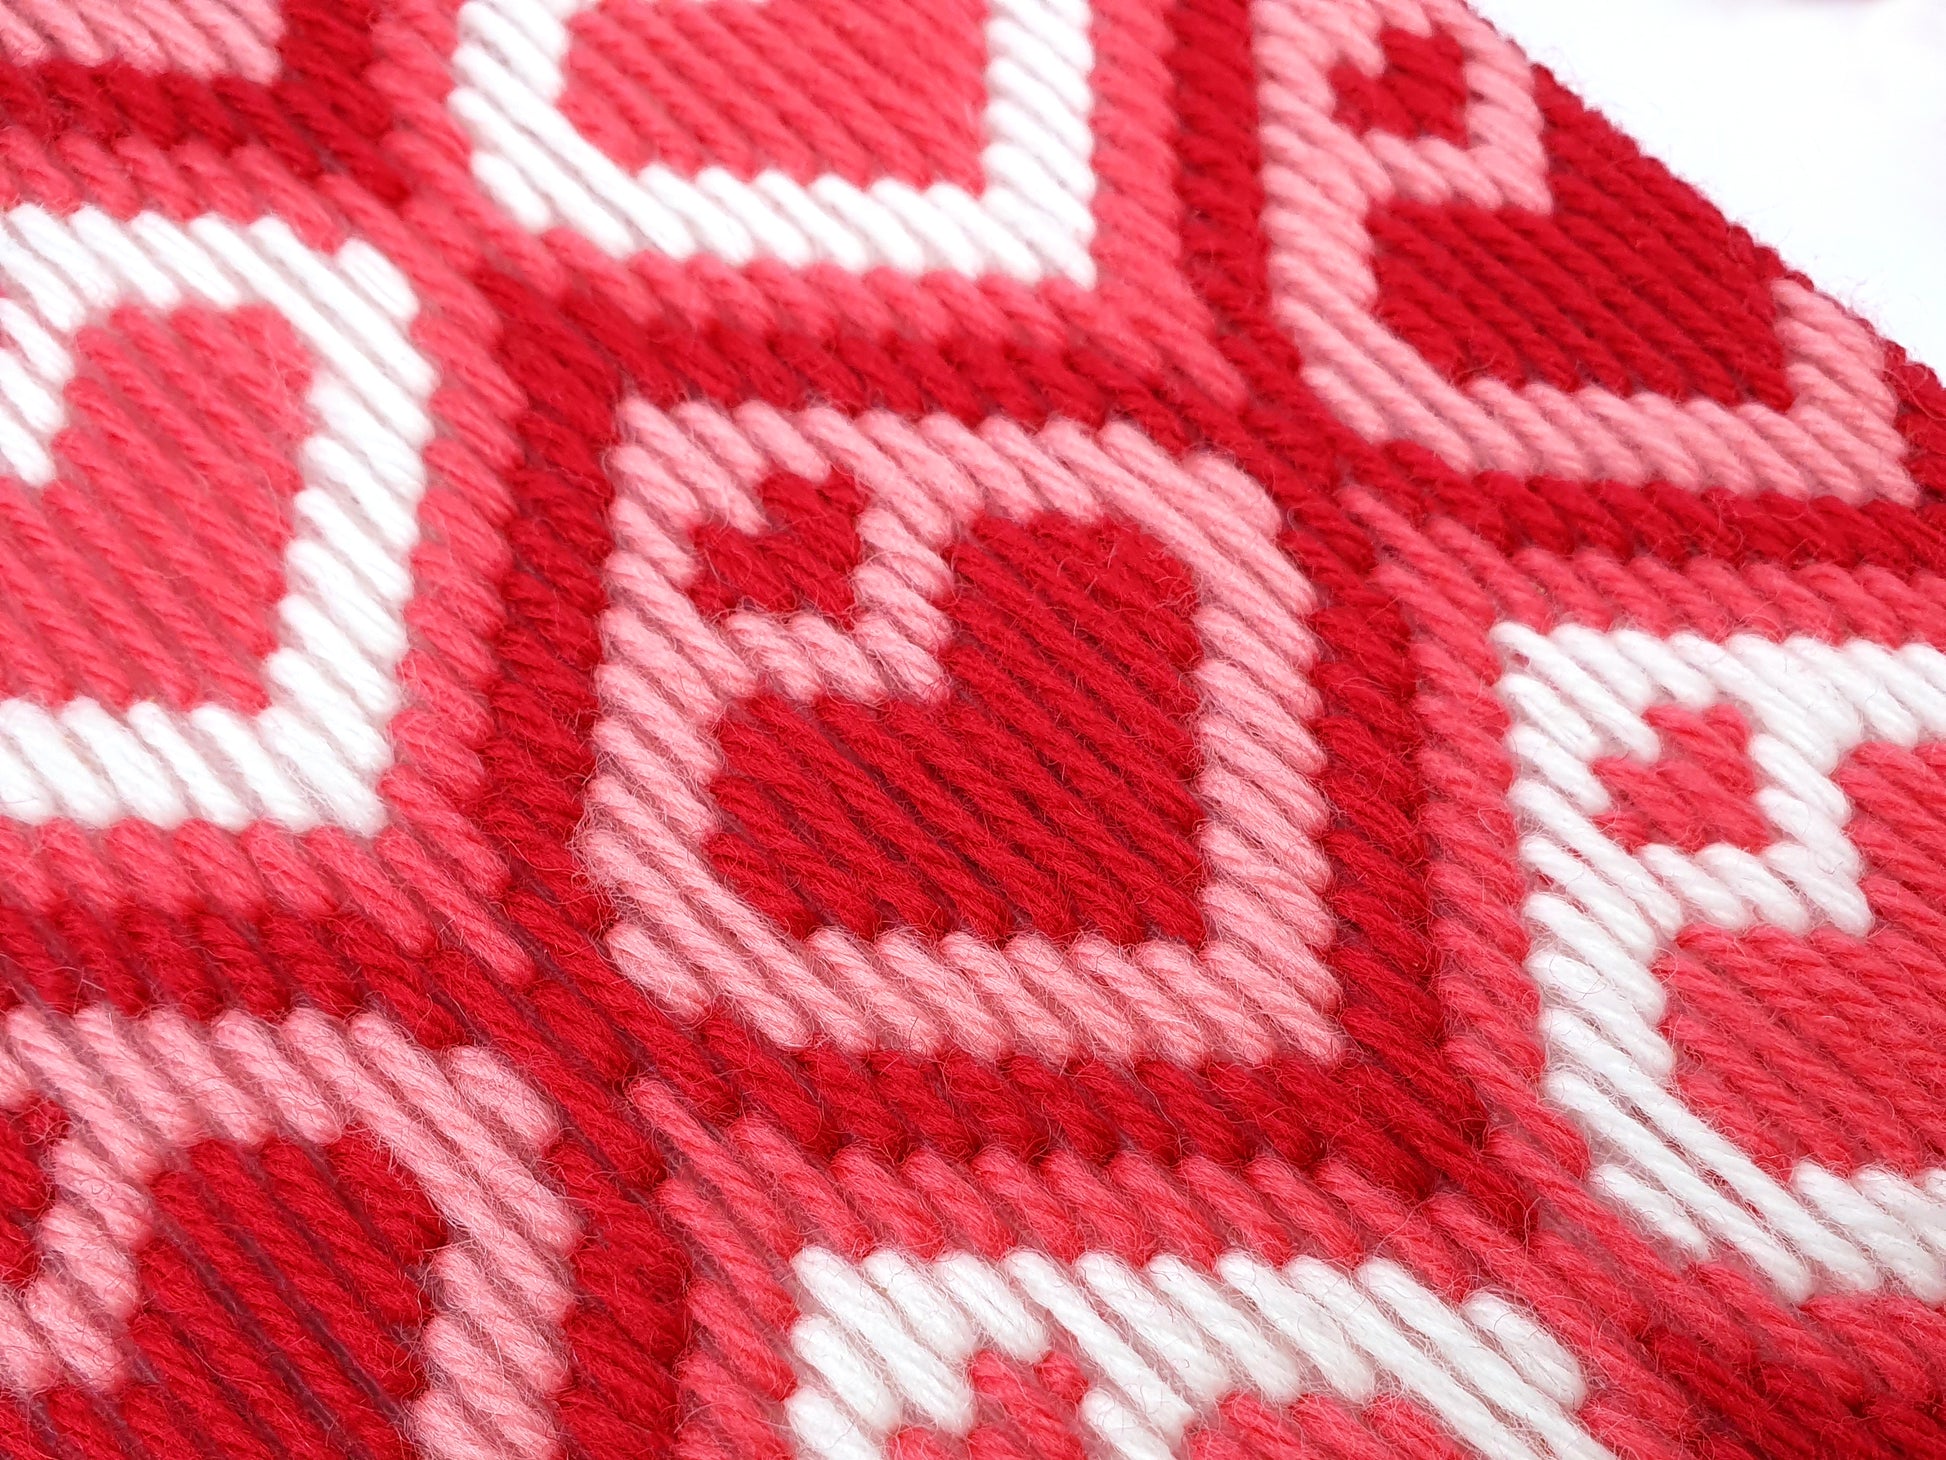 Bargello Tapestry Kit - Loadsa Love Wall Hanging Kit - Bargello Kit - ohsewbootiful